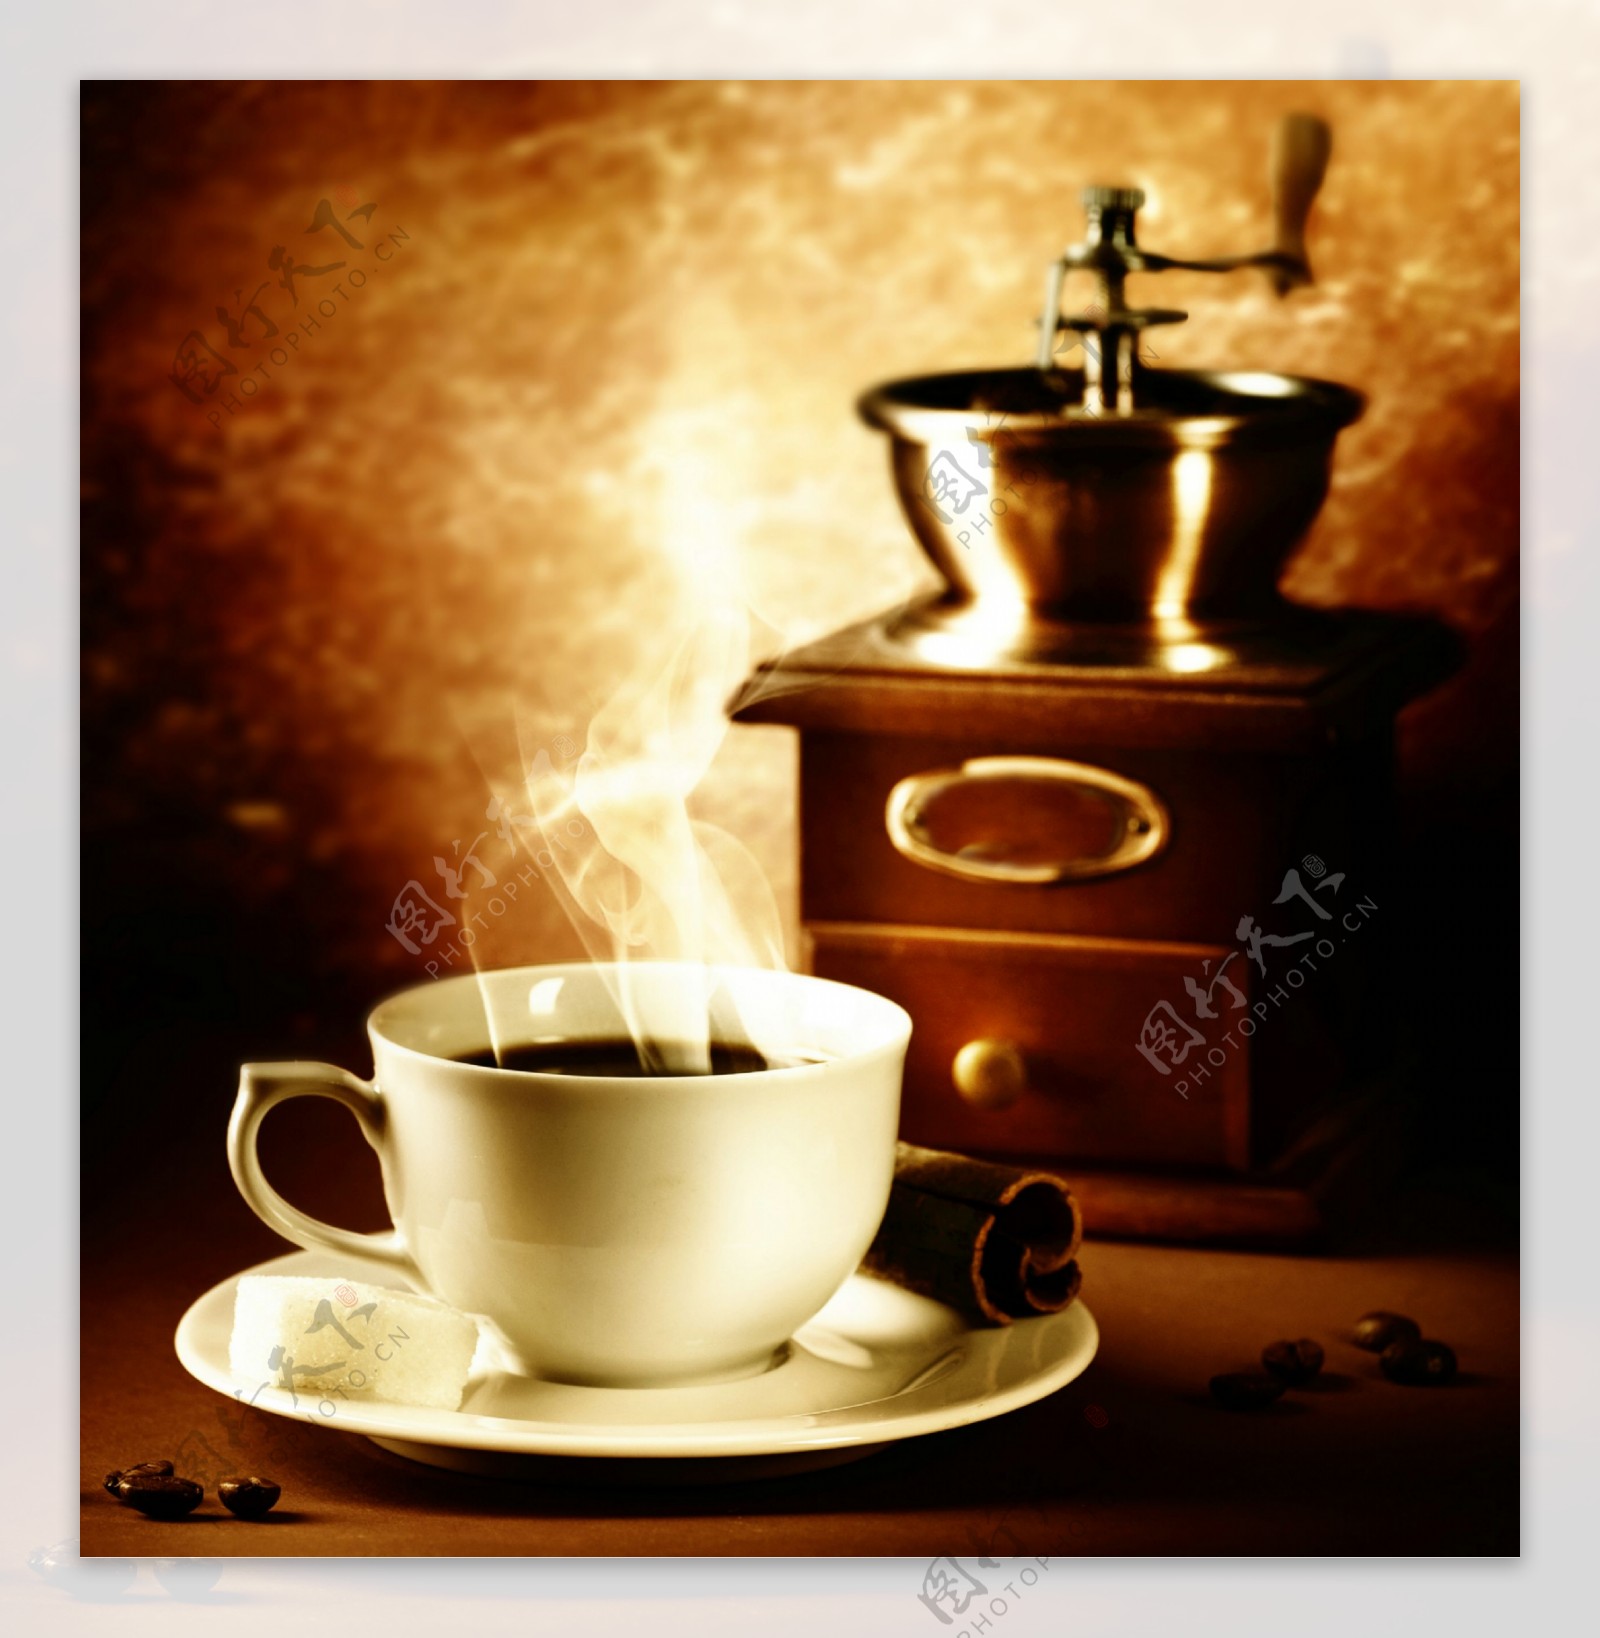 咖啡研磨机与热腾腾的咖啡